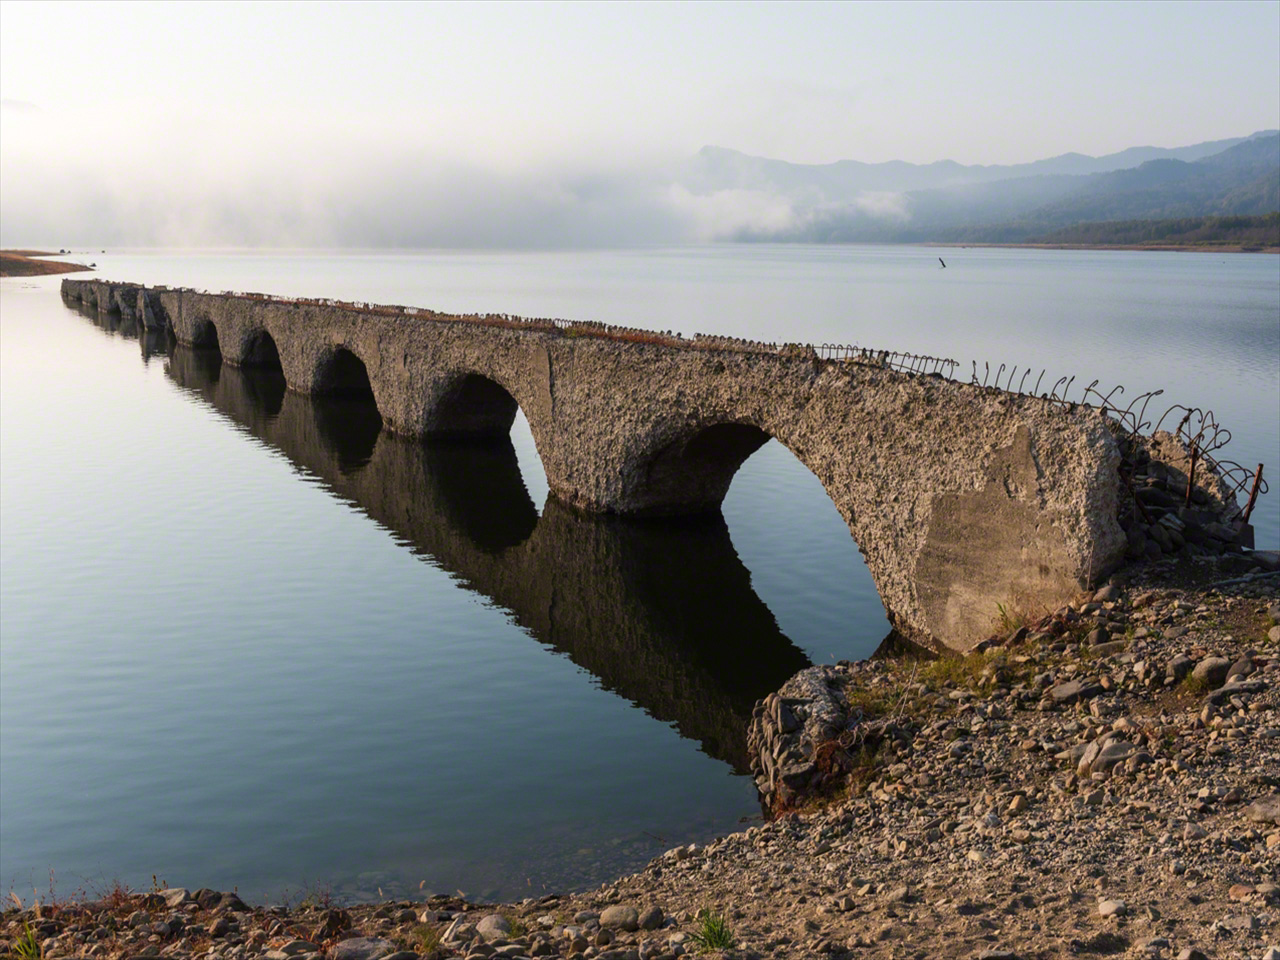 Octobre Près de 70 % du pont est submergé en raison de l’augmentation de la quantité d’eau stockée par le barrage en préparation de l’hiver.